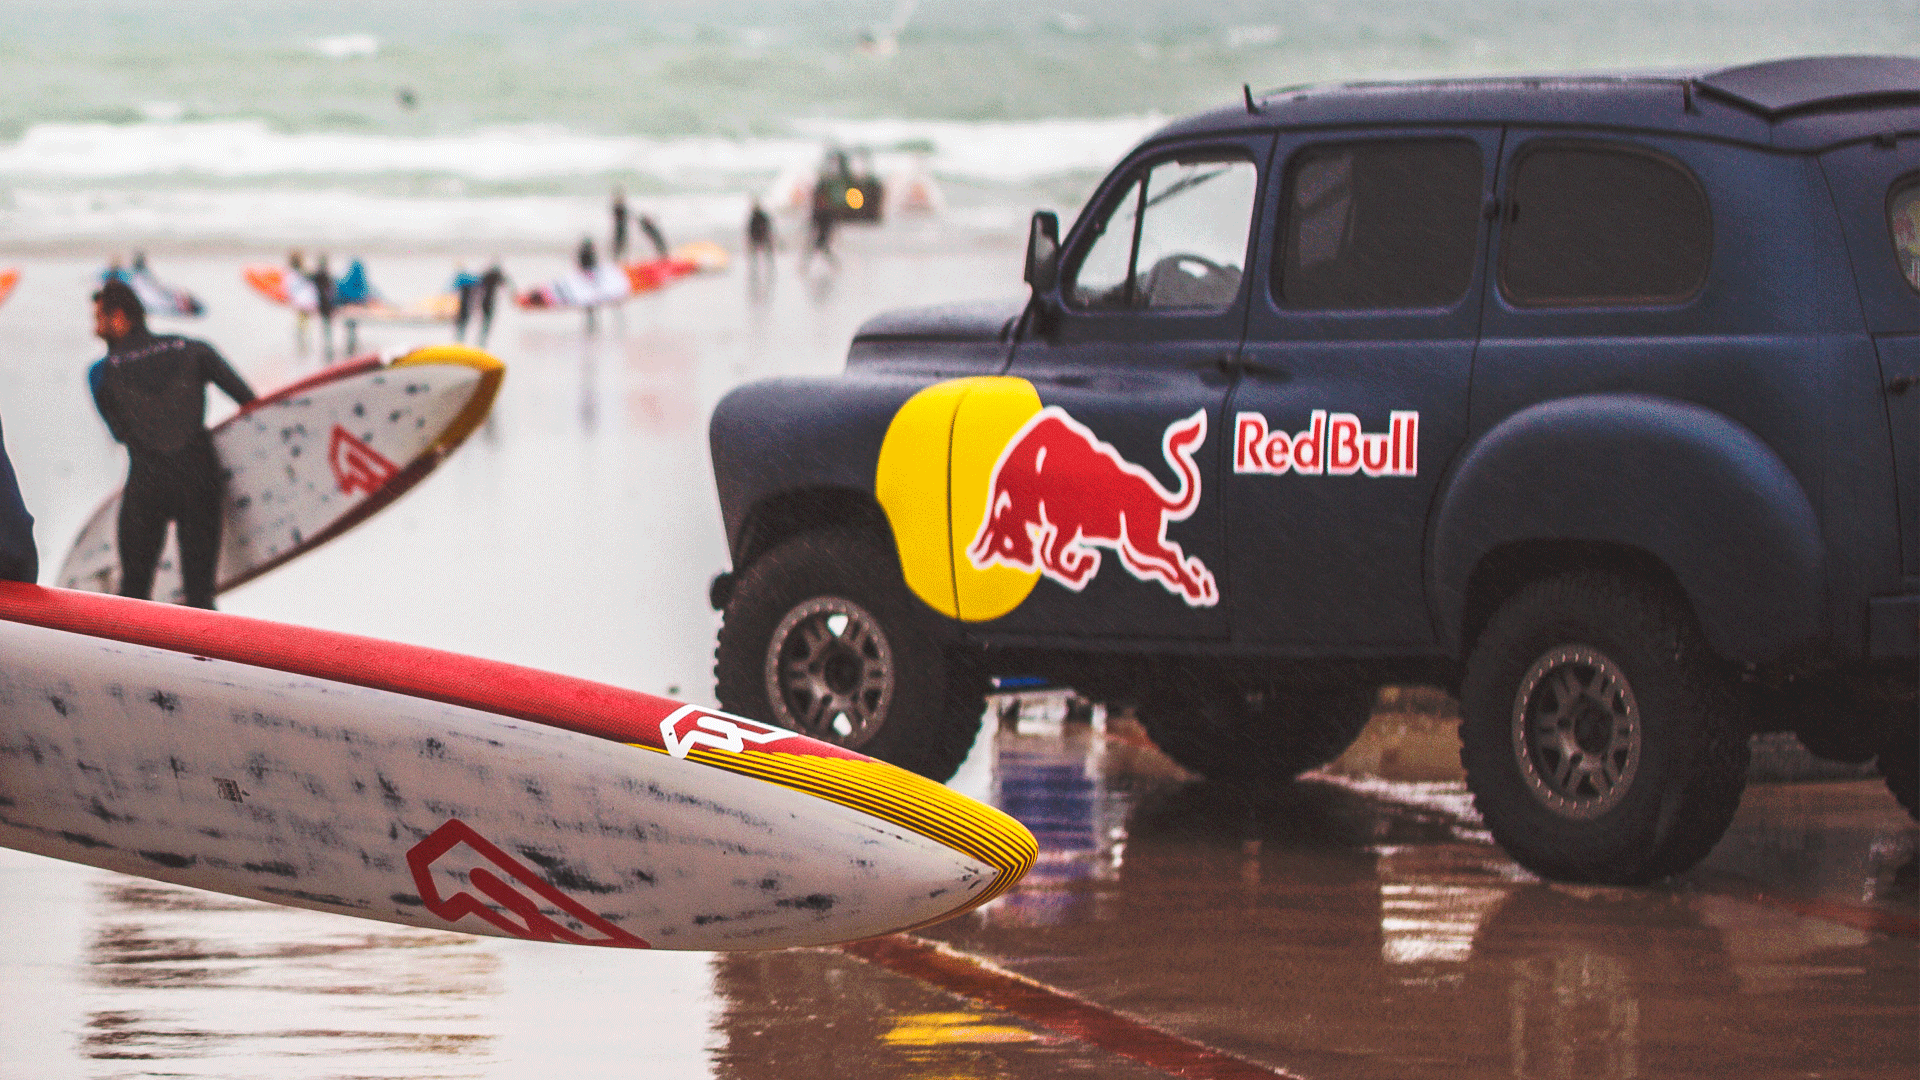 Photographie d'un camion Red Bull et d'une équipe de paddle sur la plage à Lille